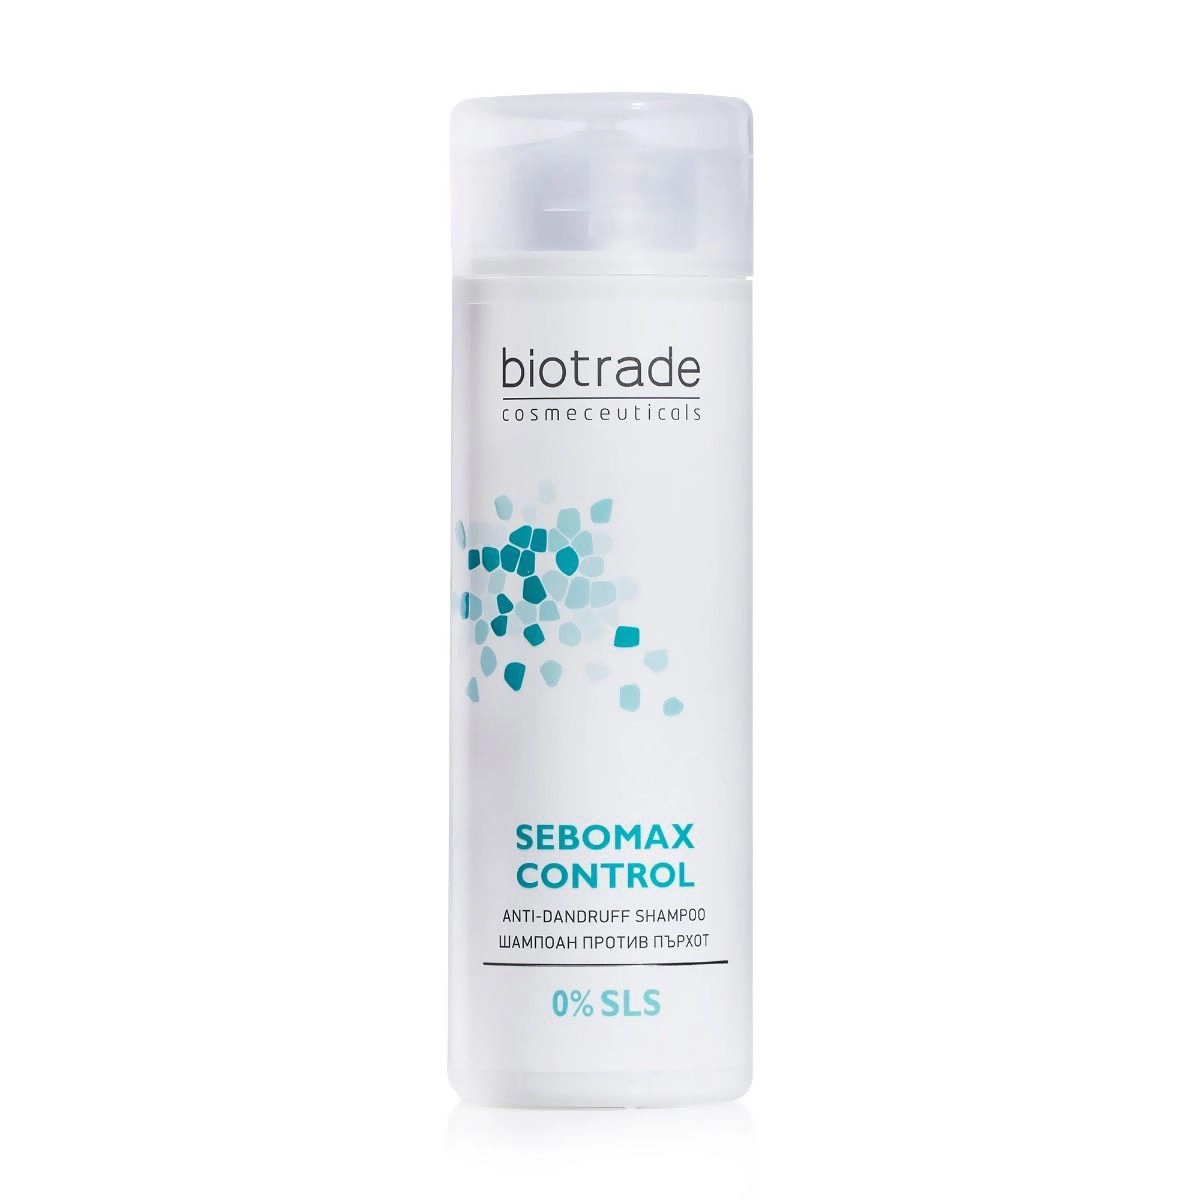 Безсульфатний шампунь проти лупи для всіх типів волосся - Biotrade Sebomax Control Anti-Dandruff Shampoo, 200 мл - фото N3